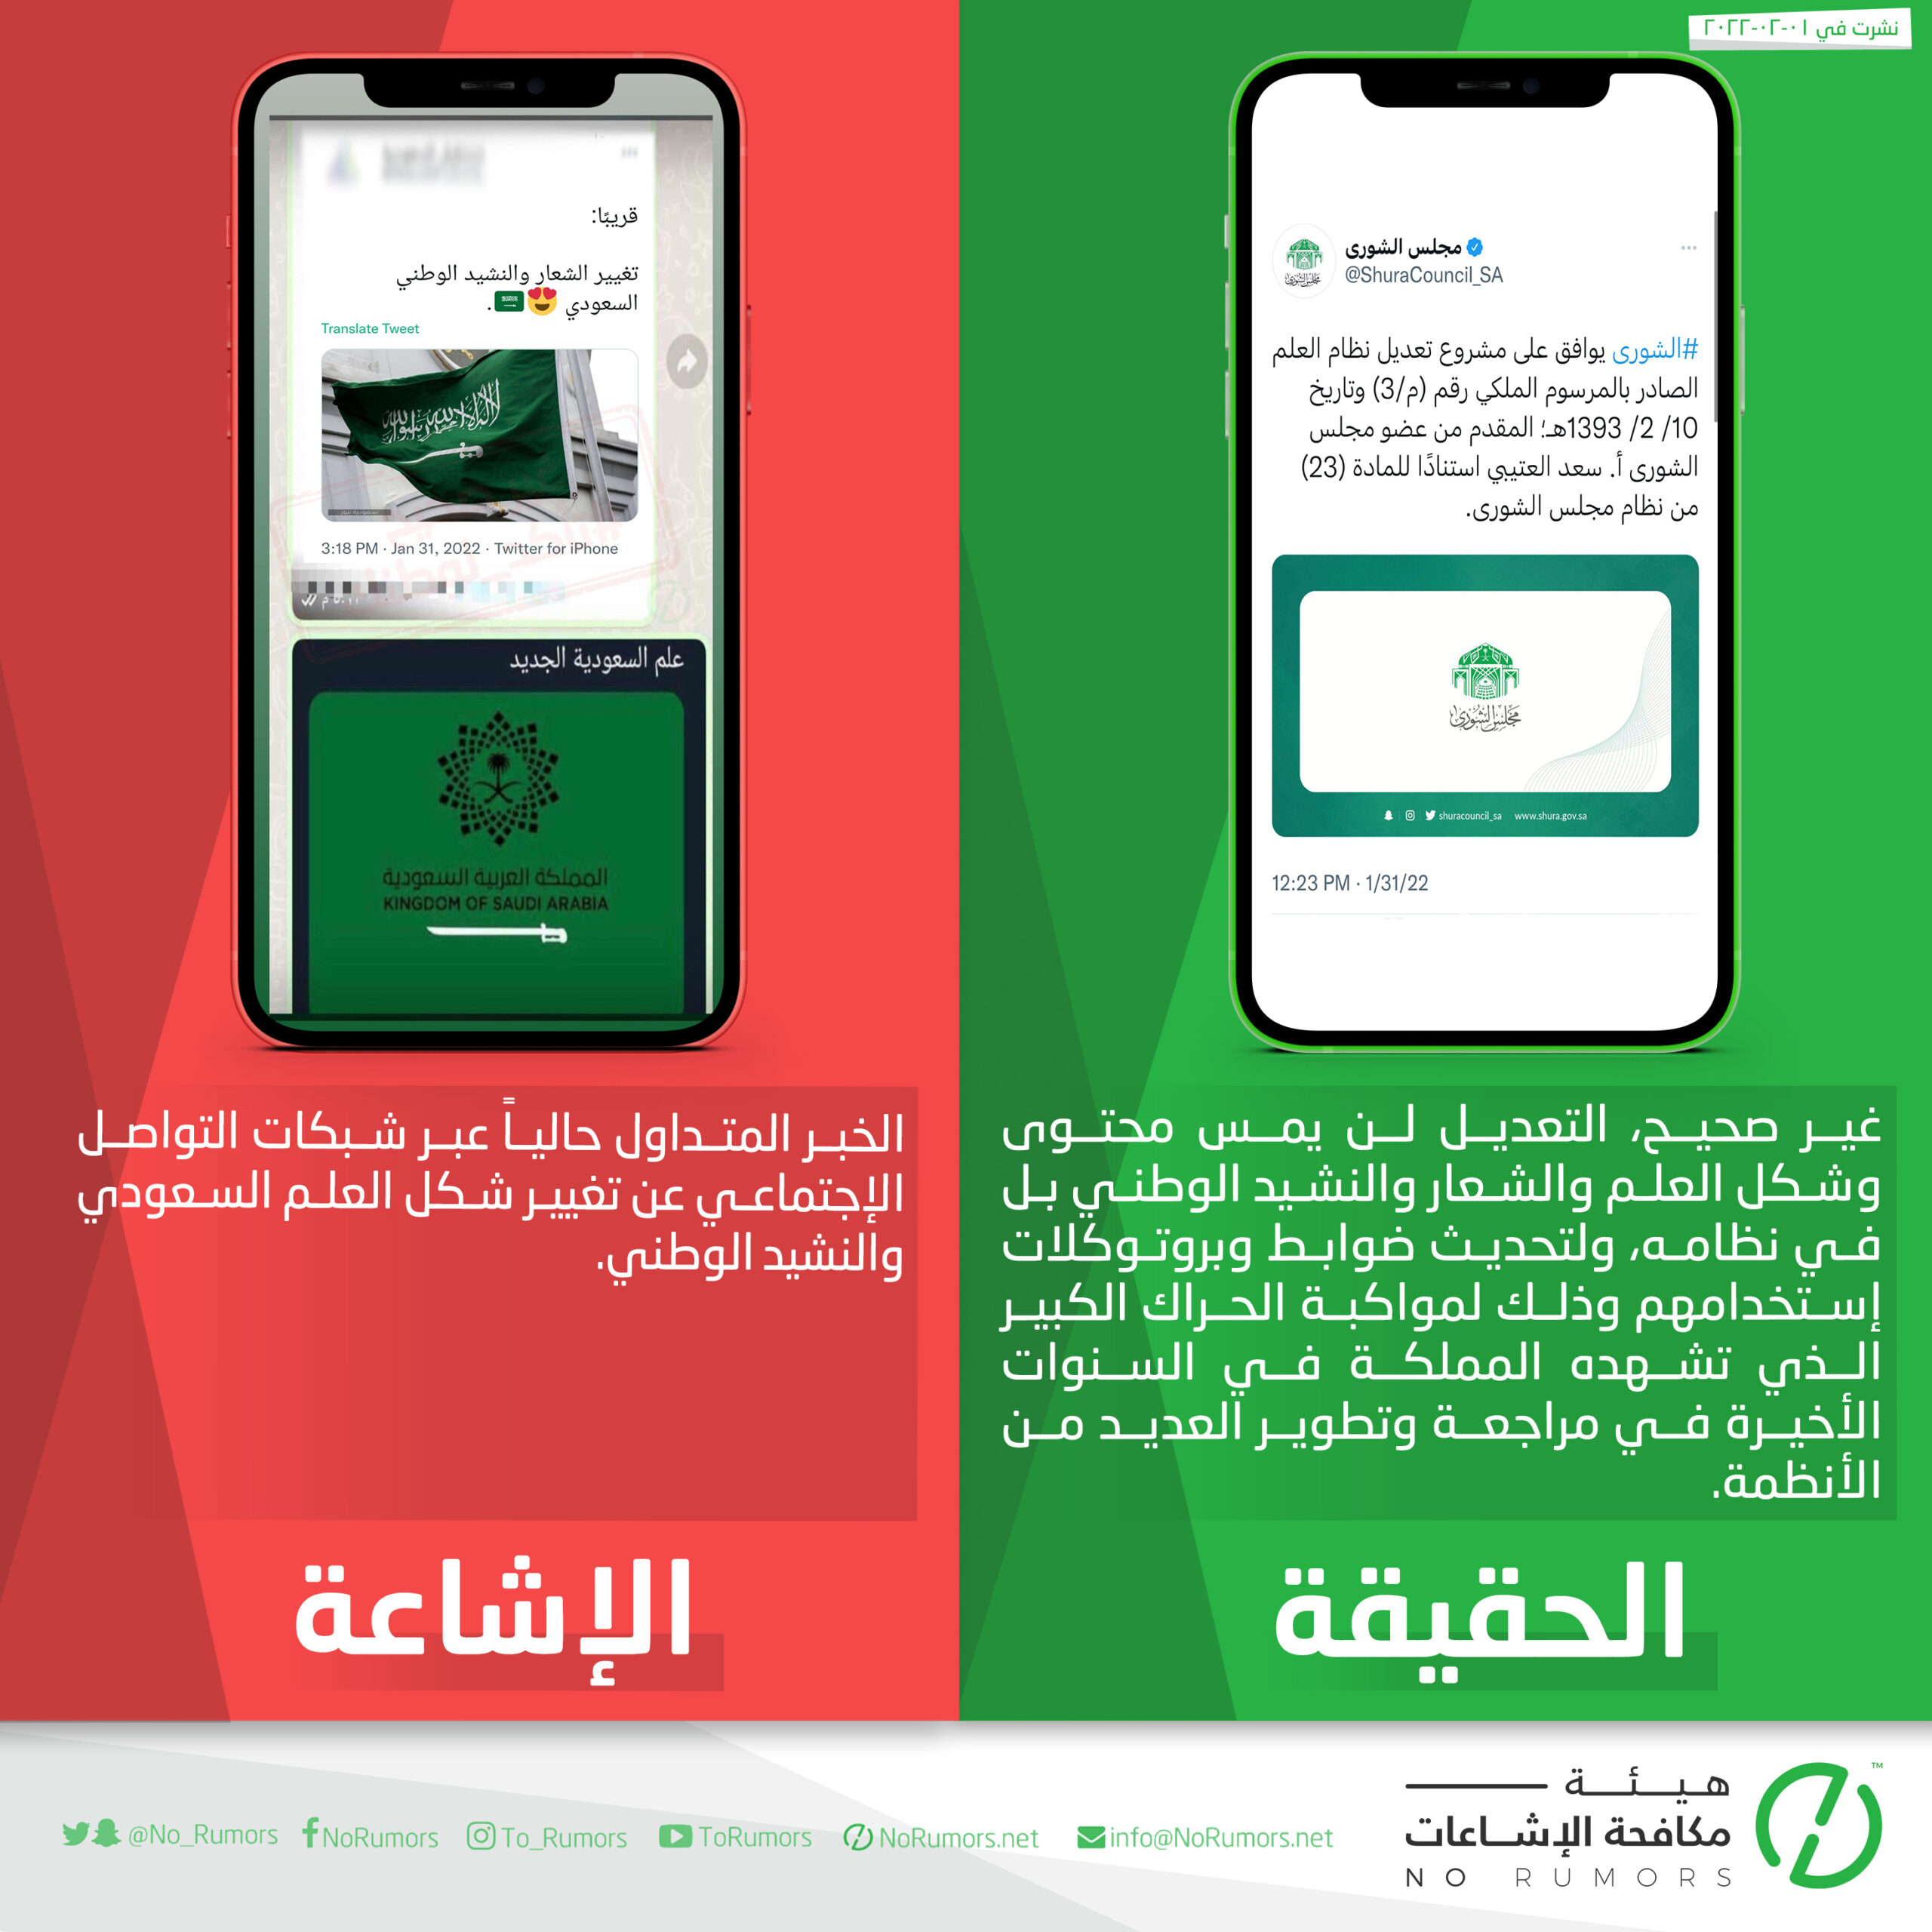 حقيقة الخبر المتداول عبر شبكات التواصل الإجتماعي عن تغيير شكل العلم السعودي والنشيد الوطني